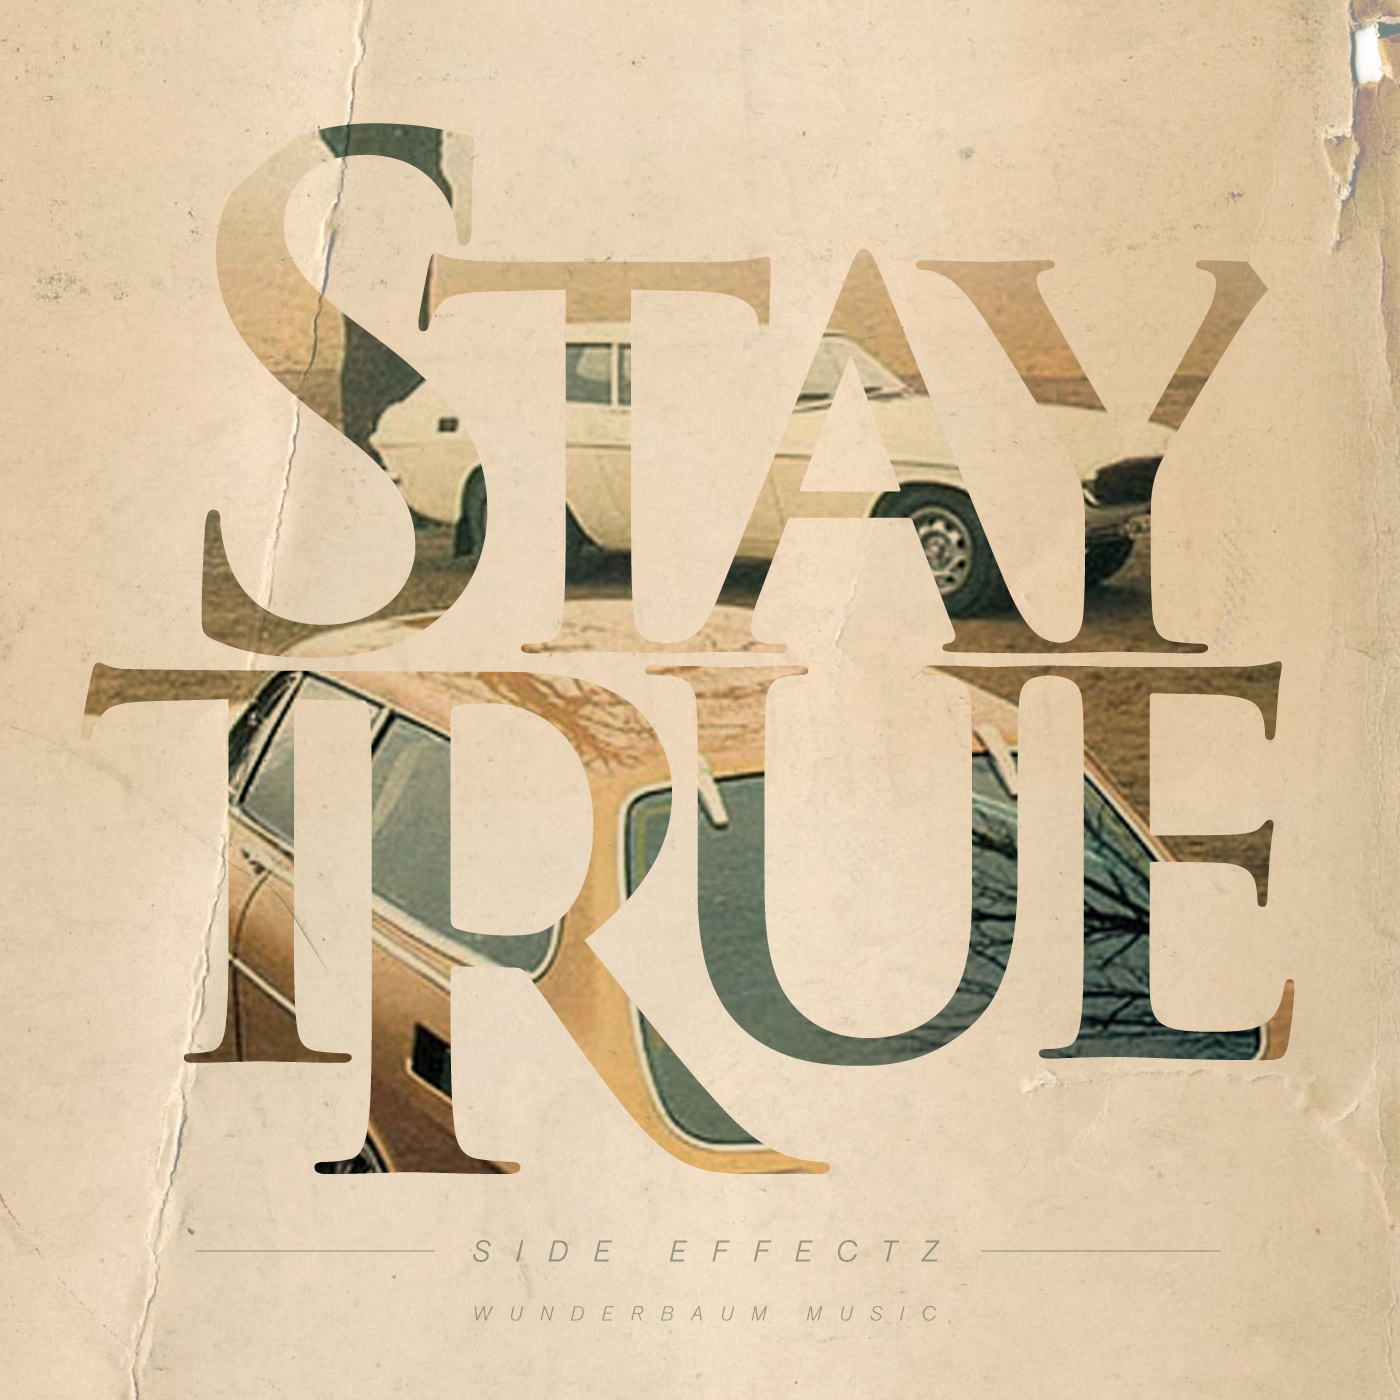 True side. Stay simple stay true шоппер. Stay true. Stay true for more. Stay true to you.